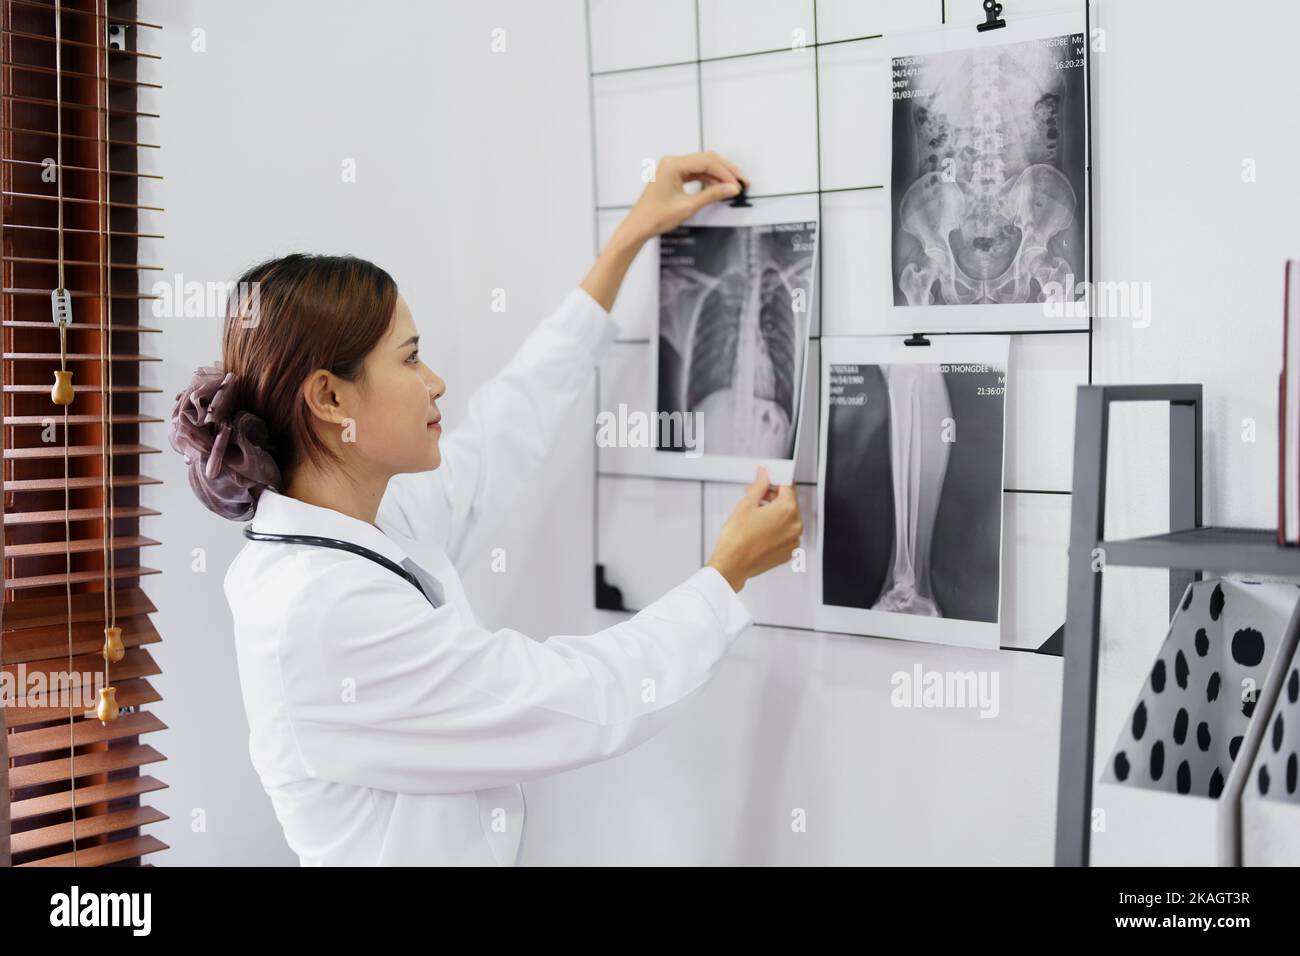 Portrait d'une femme asiatique qui regarde le film radiographique des poumons d'un patient avant d'analyser les symptômes pour le traitement Banque D'Images